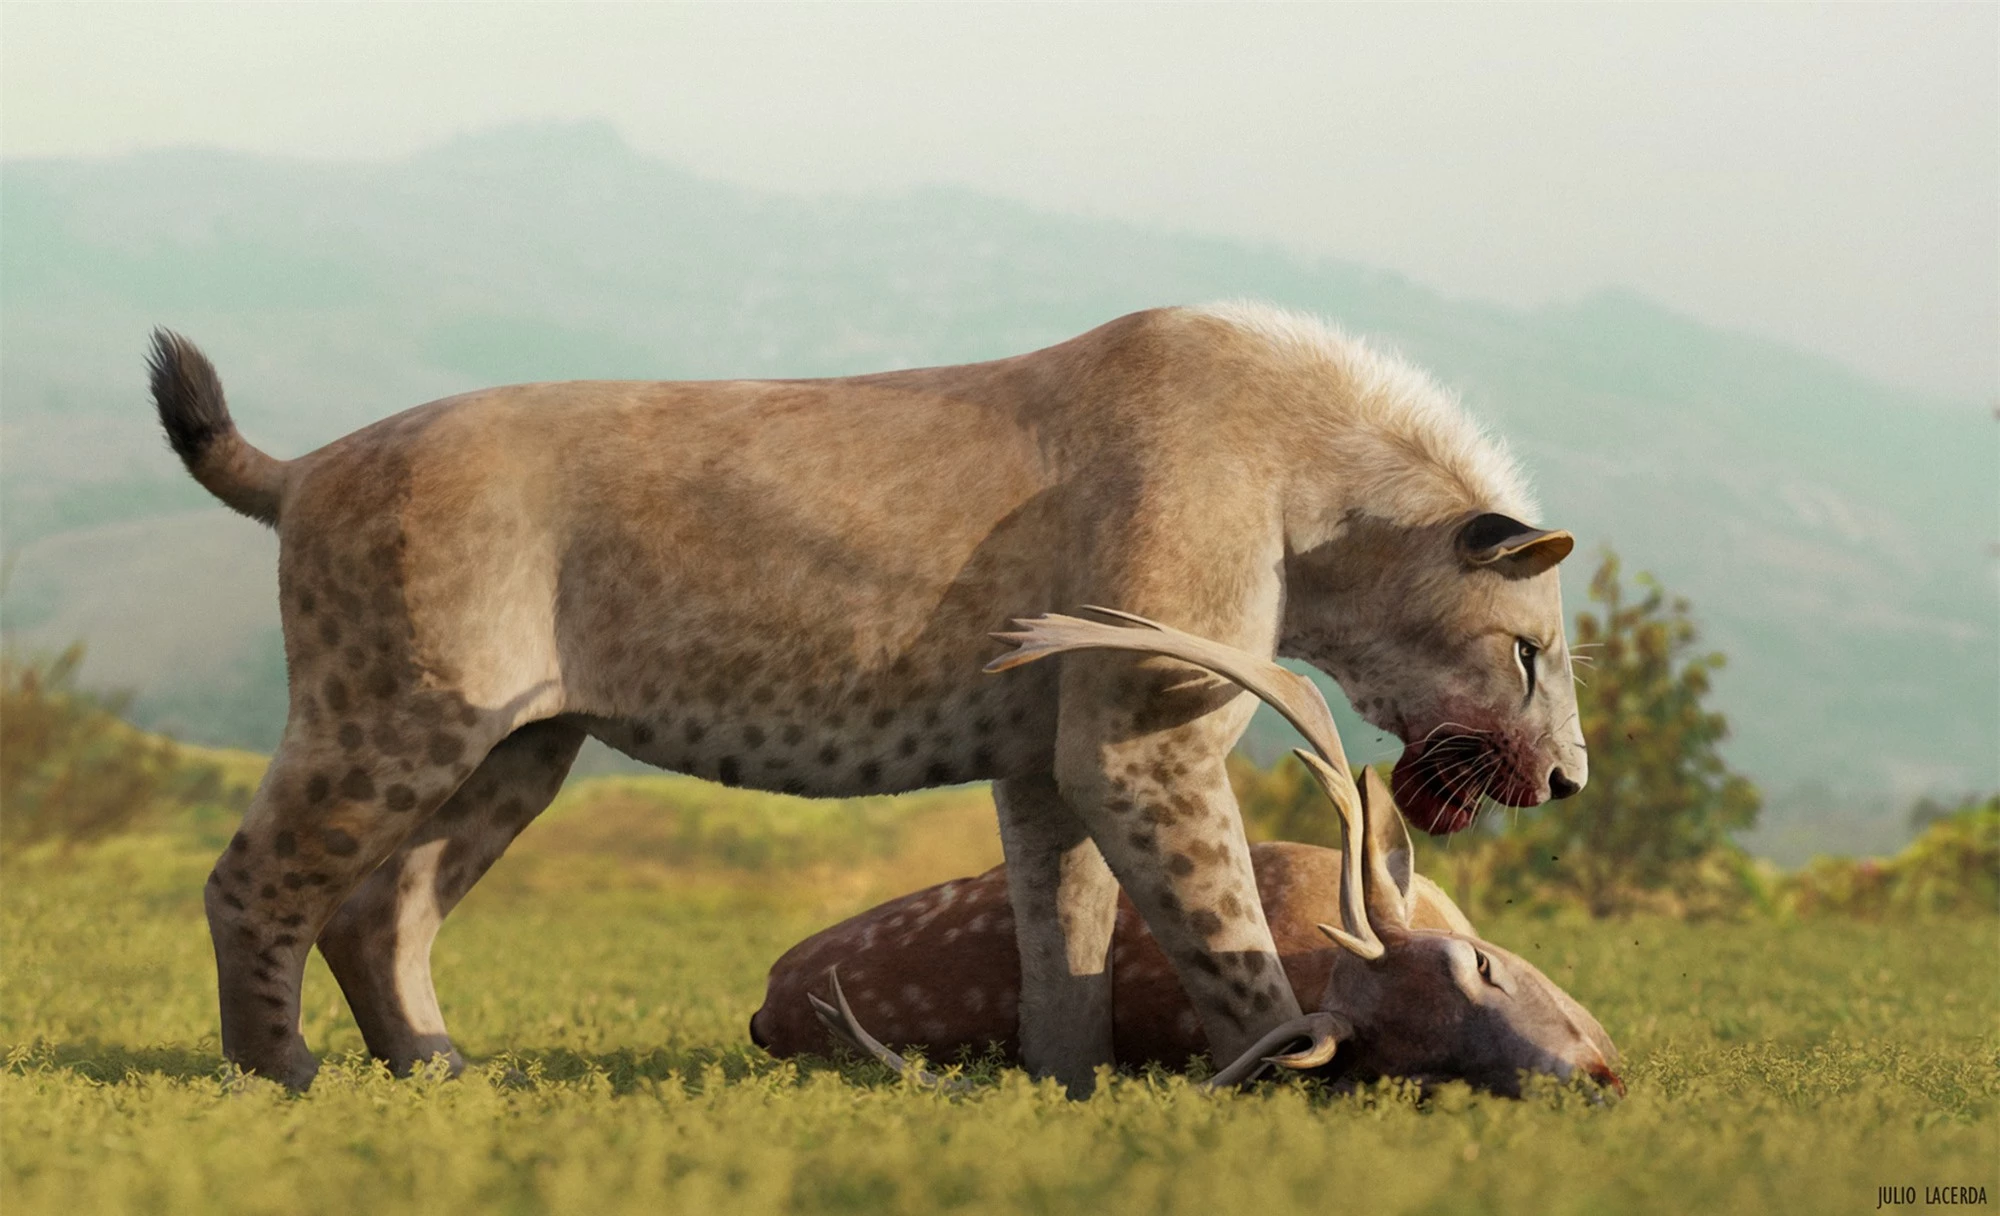 Không phải hổ, cũng chẳng phải sư tử, báo đốm mới là kẻ đã đánh đuổi hổ răng kiếm trong suốt 2 triệu năm! - Ảnh 3.